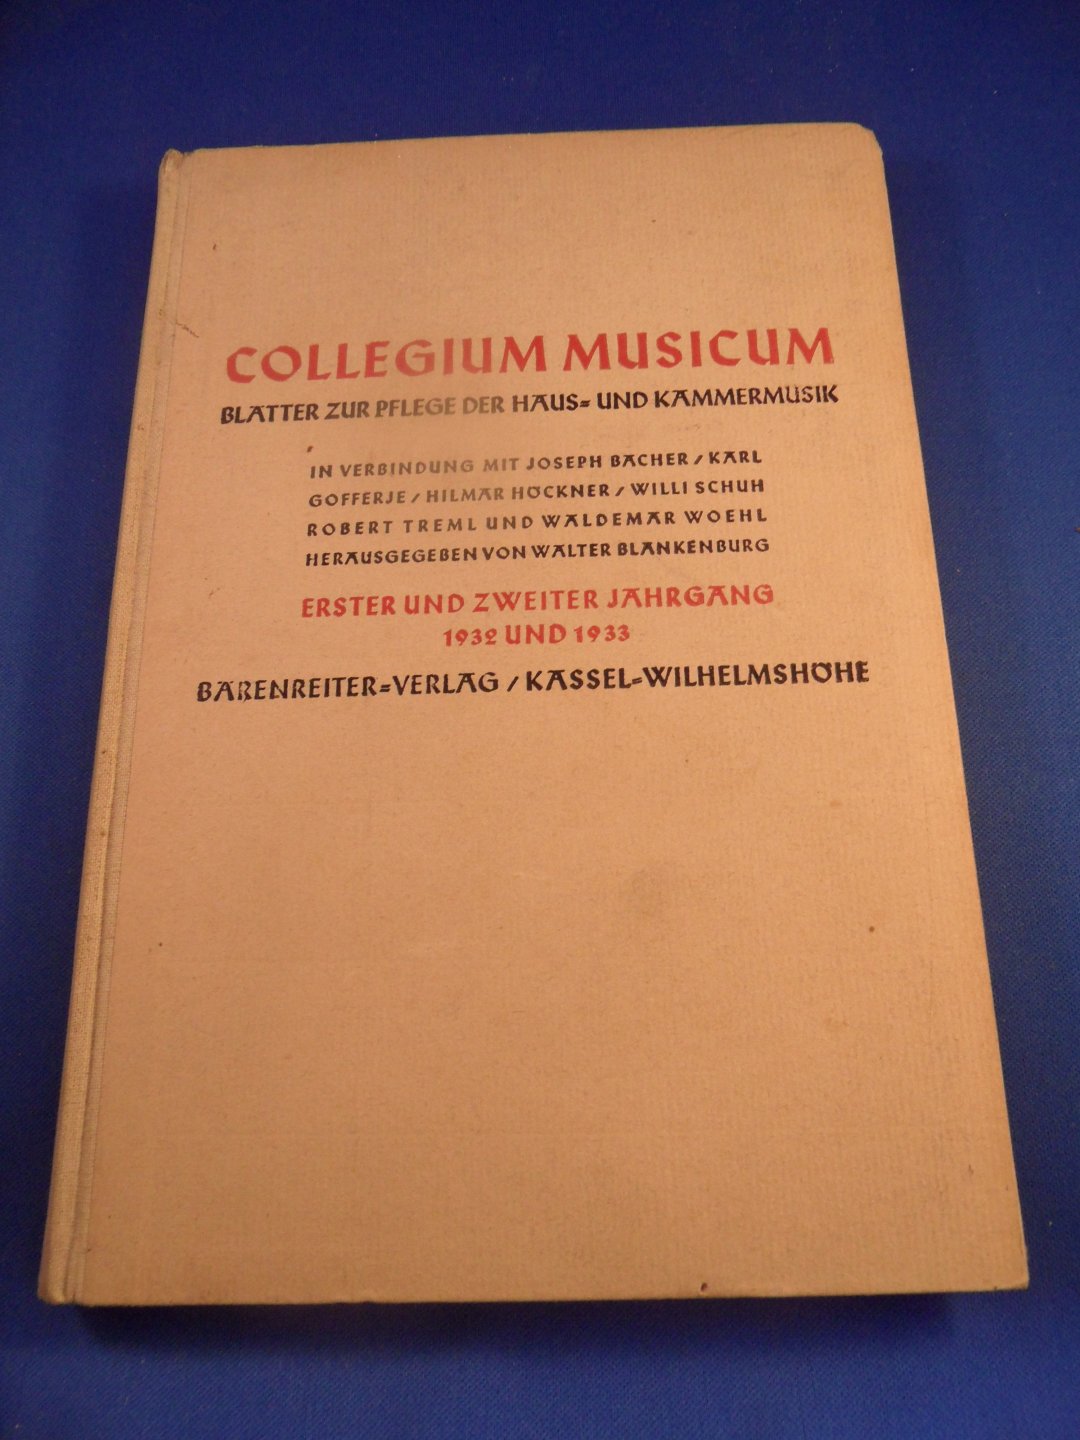 collegium musicum, - collegium musicum, jahrgang 1932 und 1933. (erster und zweiter jahrgang)